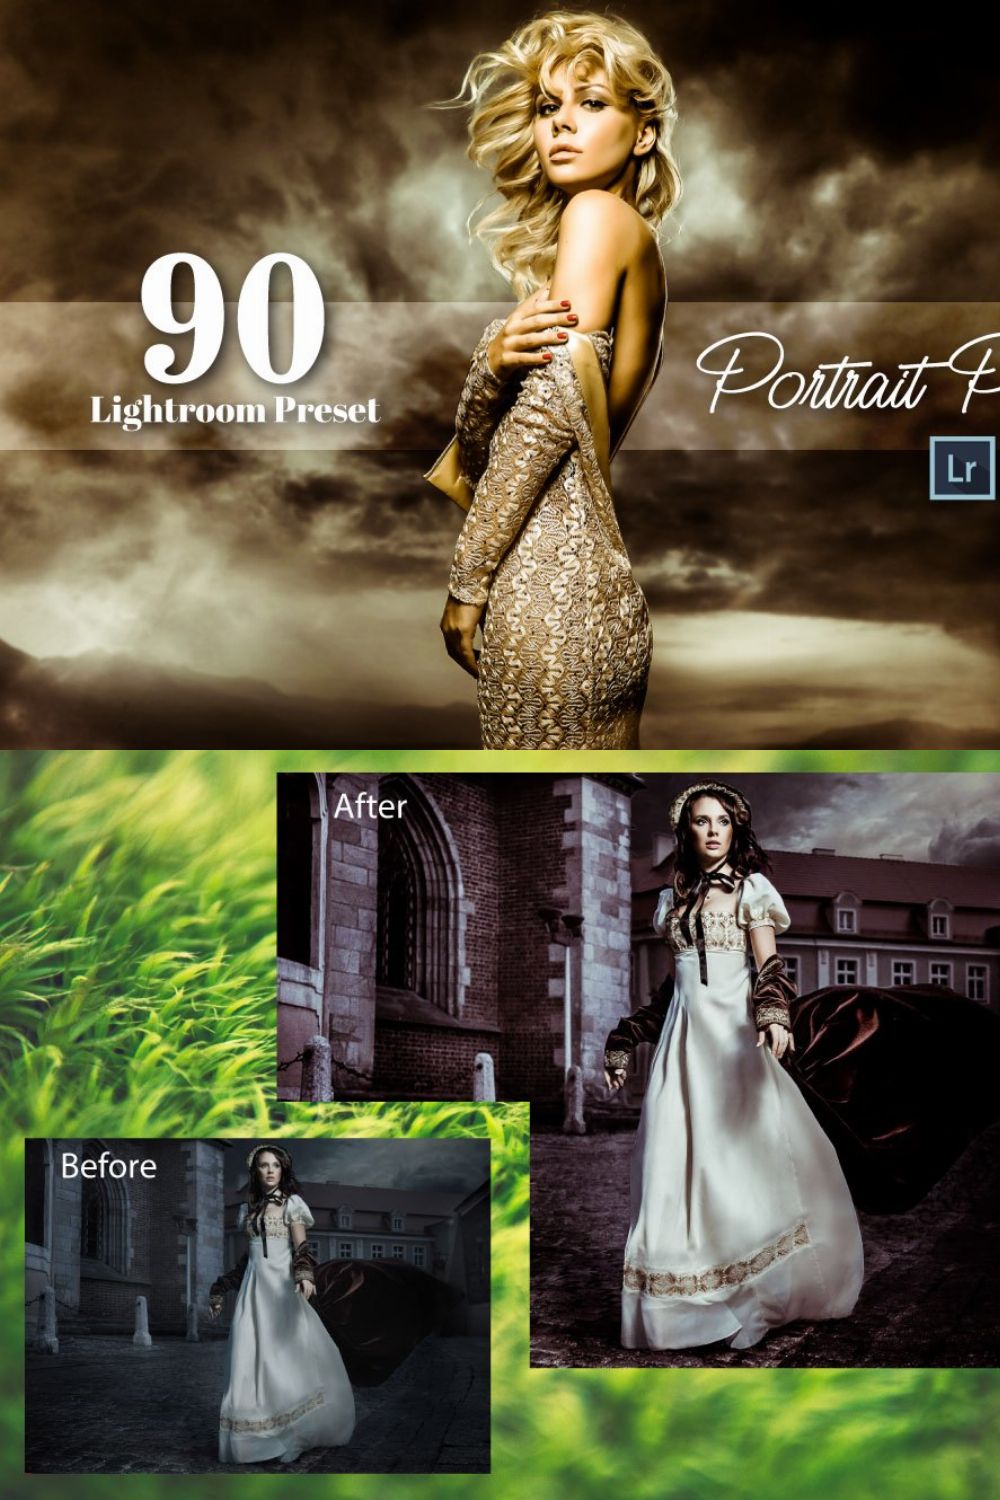 90 Portrait Pro Lightroom Preset pinterest preview image.